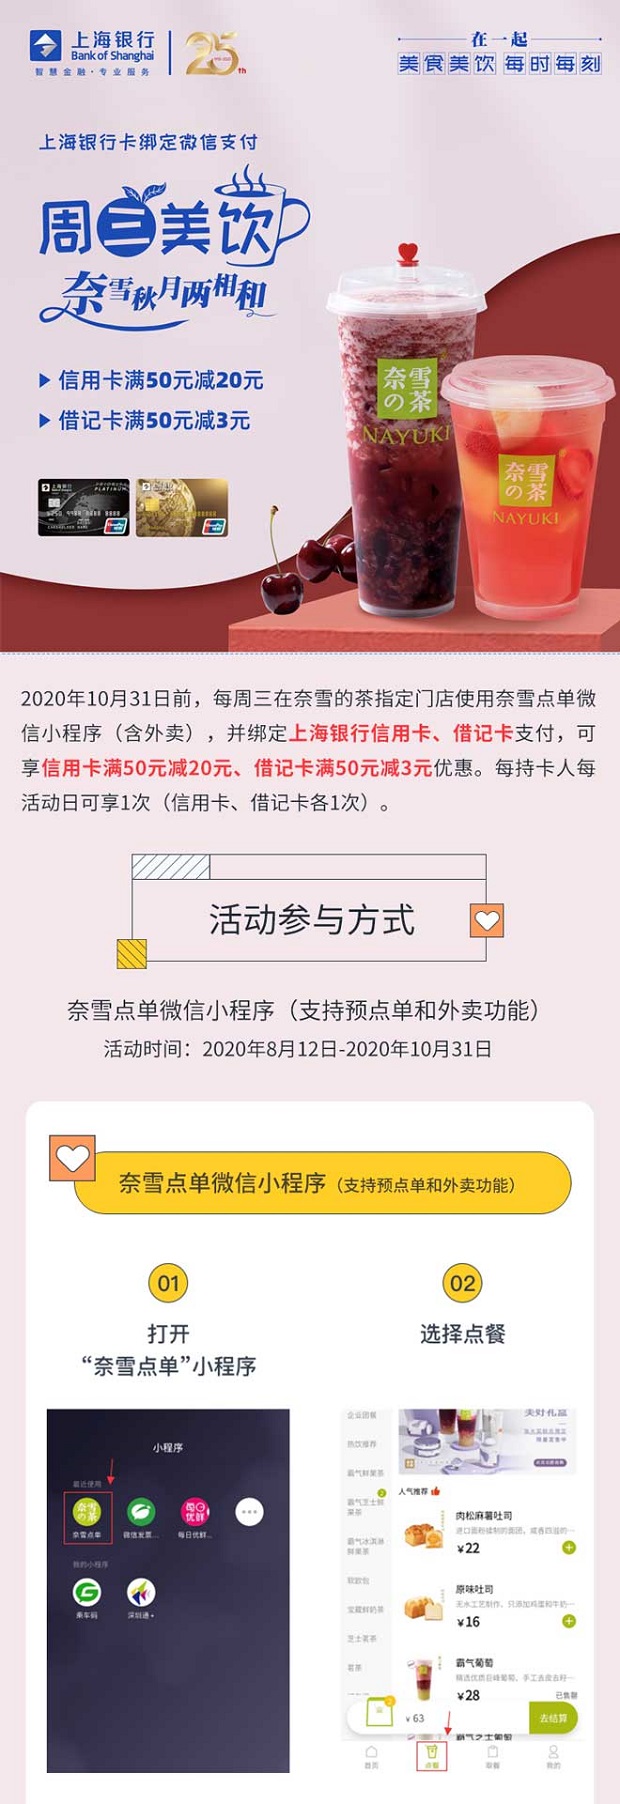 上海银行信用卡奈雪的茶每周三信用卡满50减20元